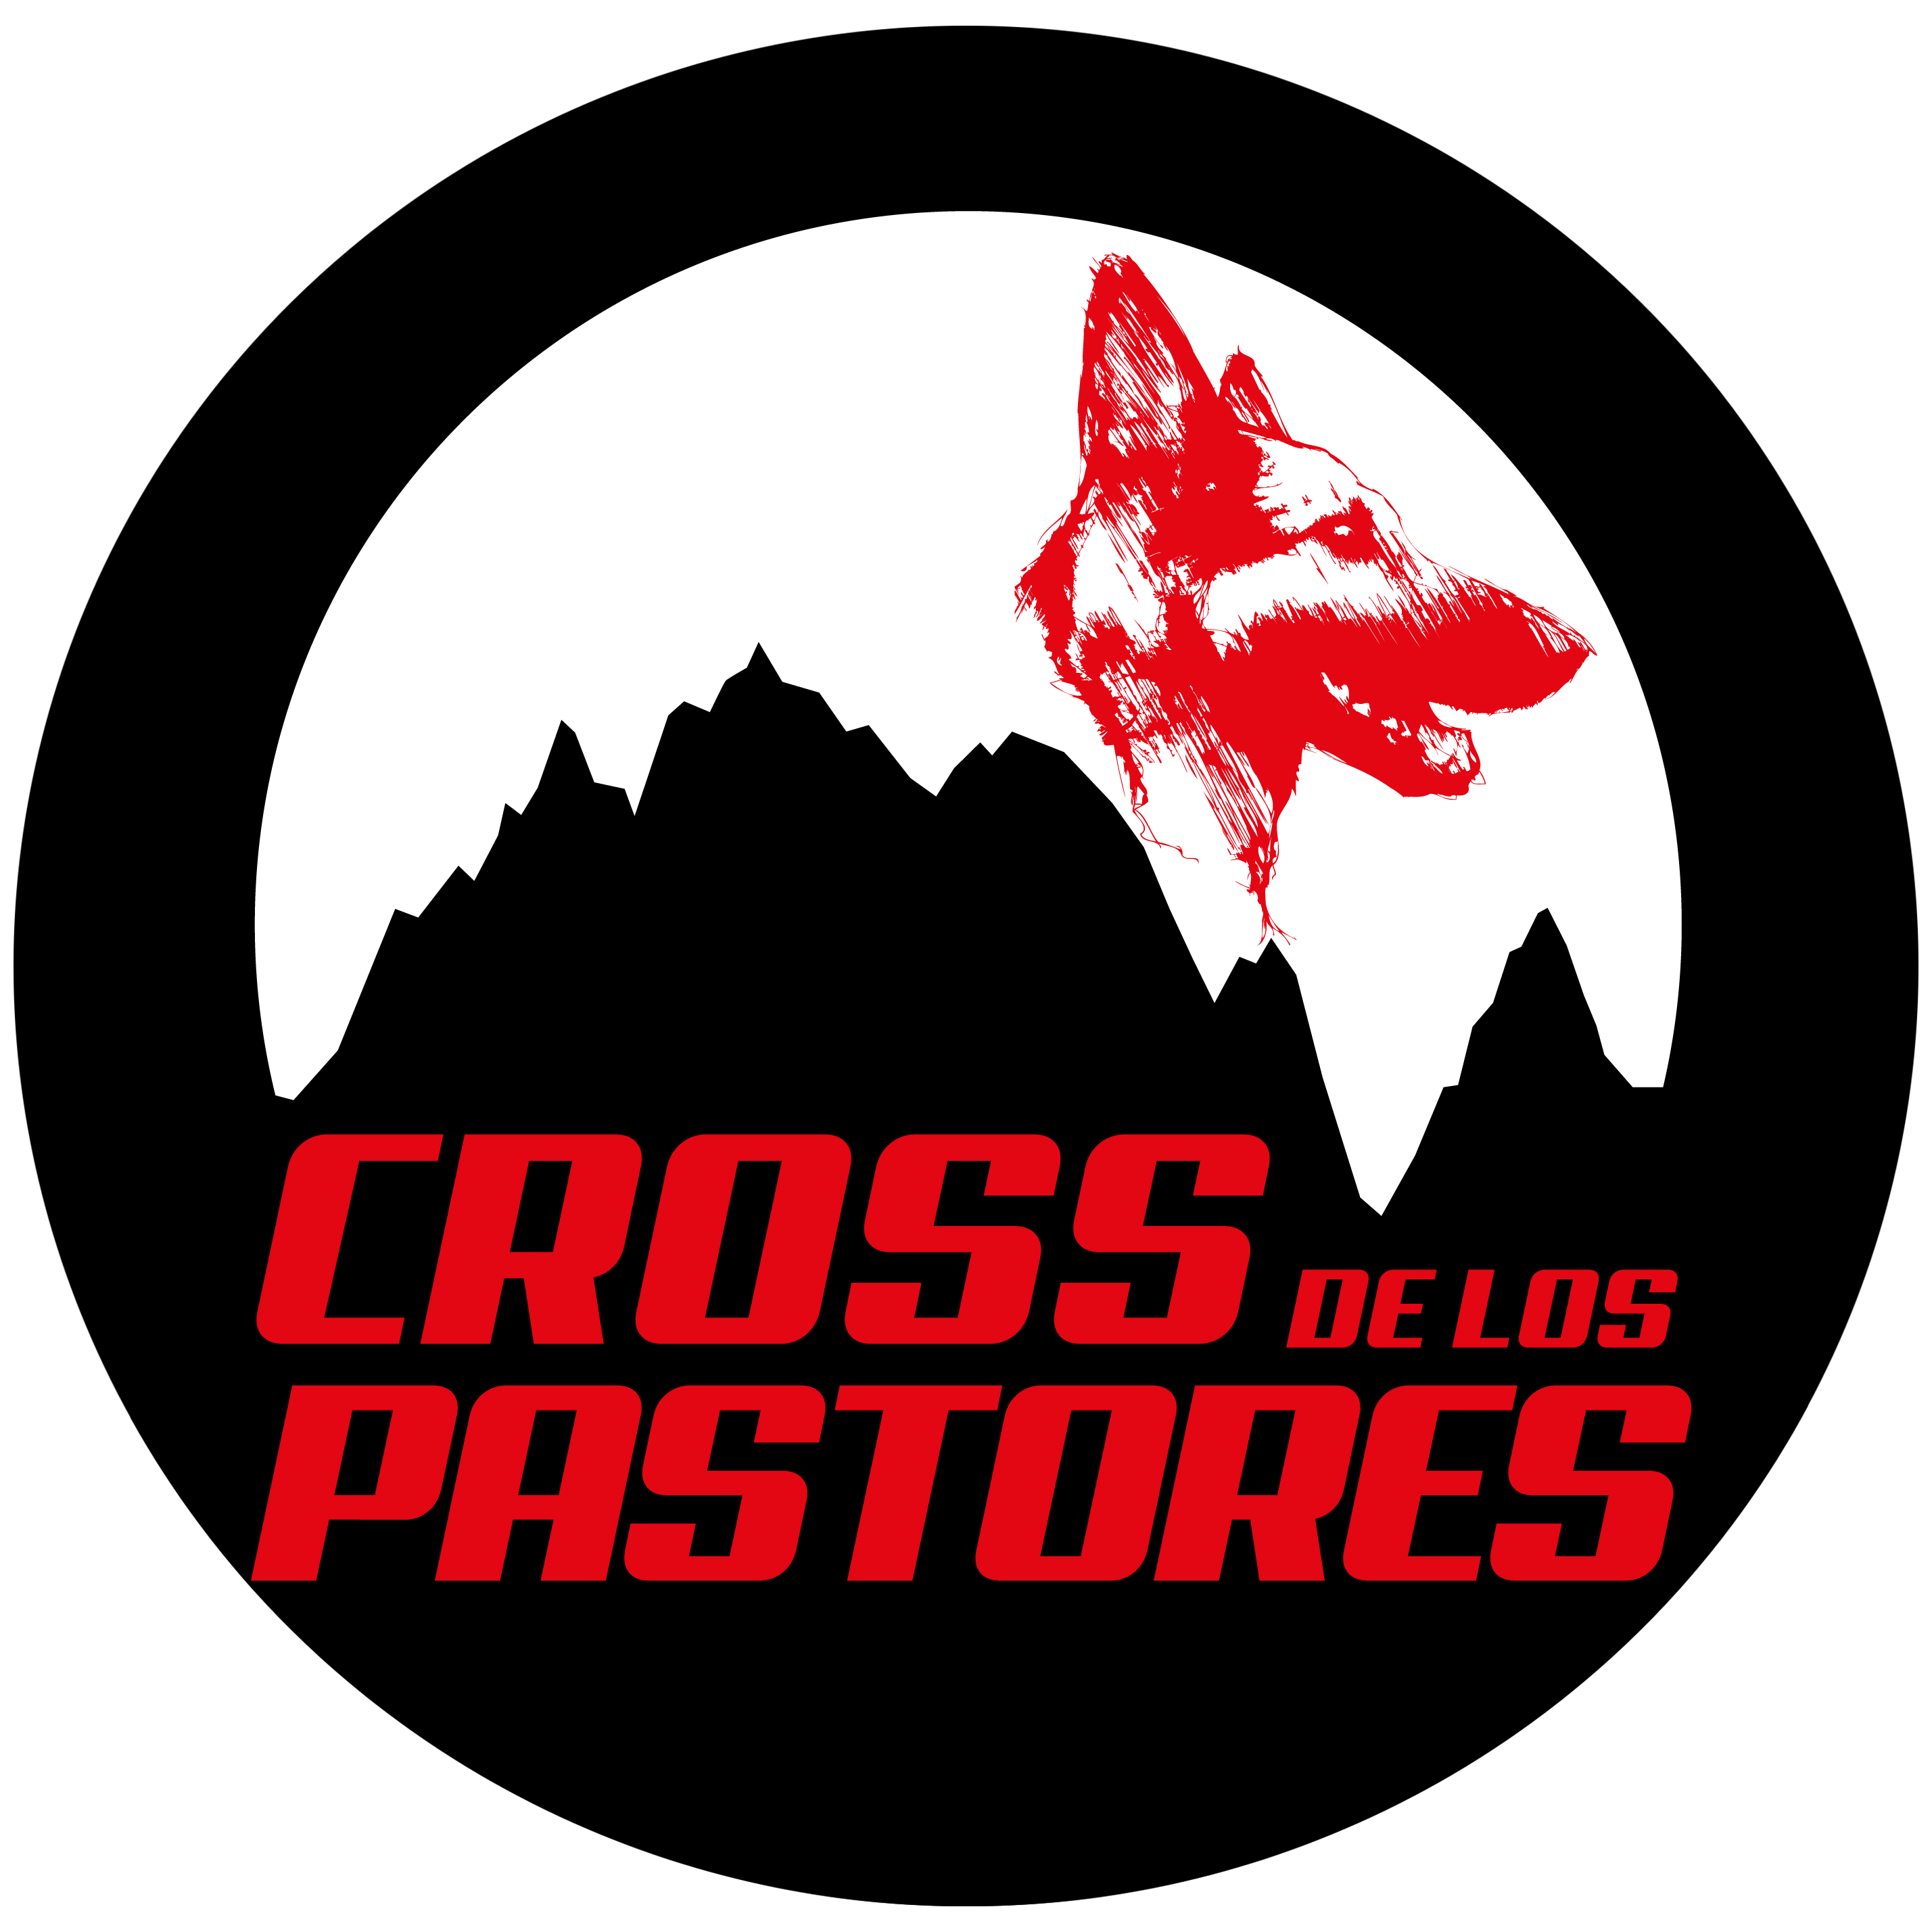 Cross de los Pastores